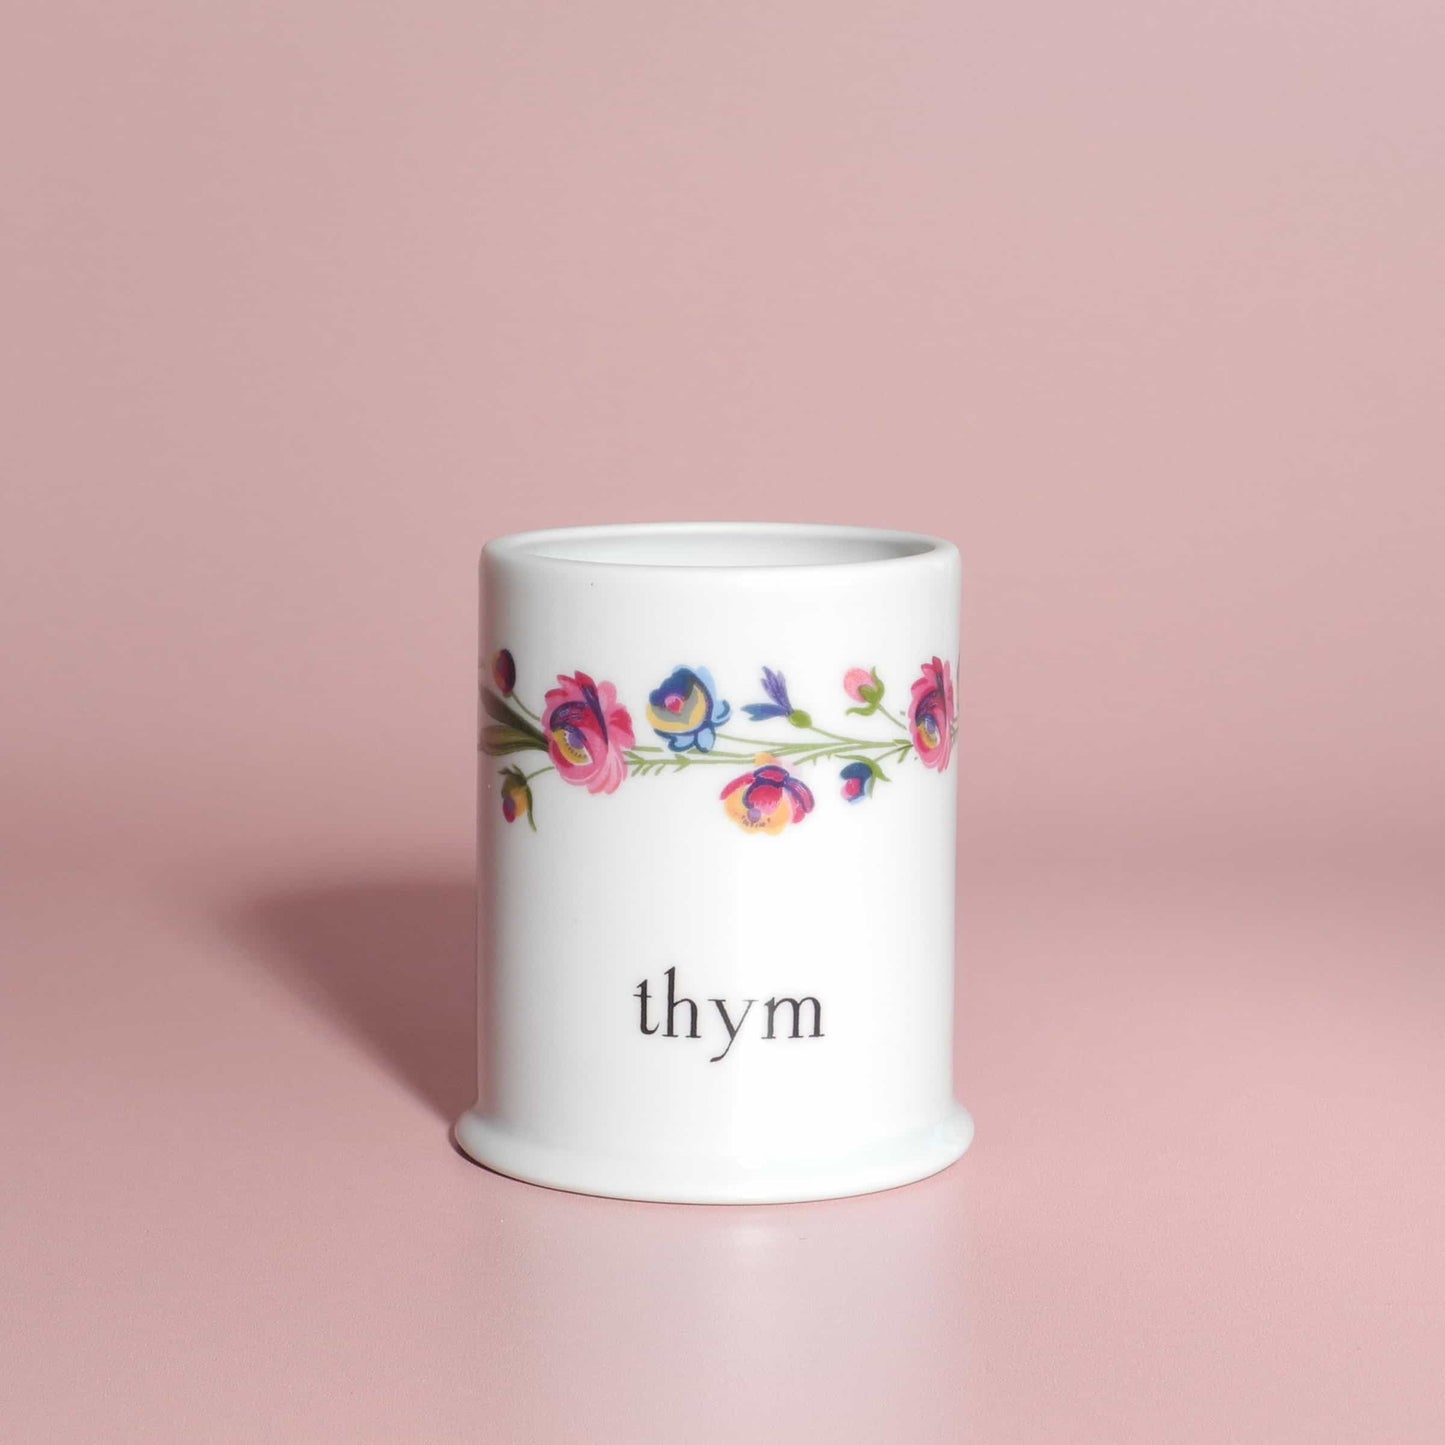 Vintage set of porcelain pots with floral design - French Address